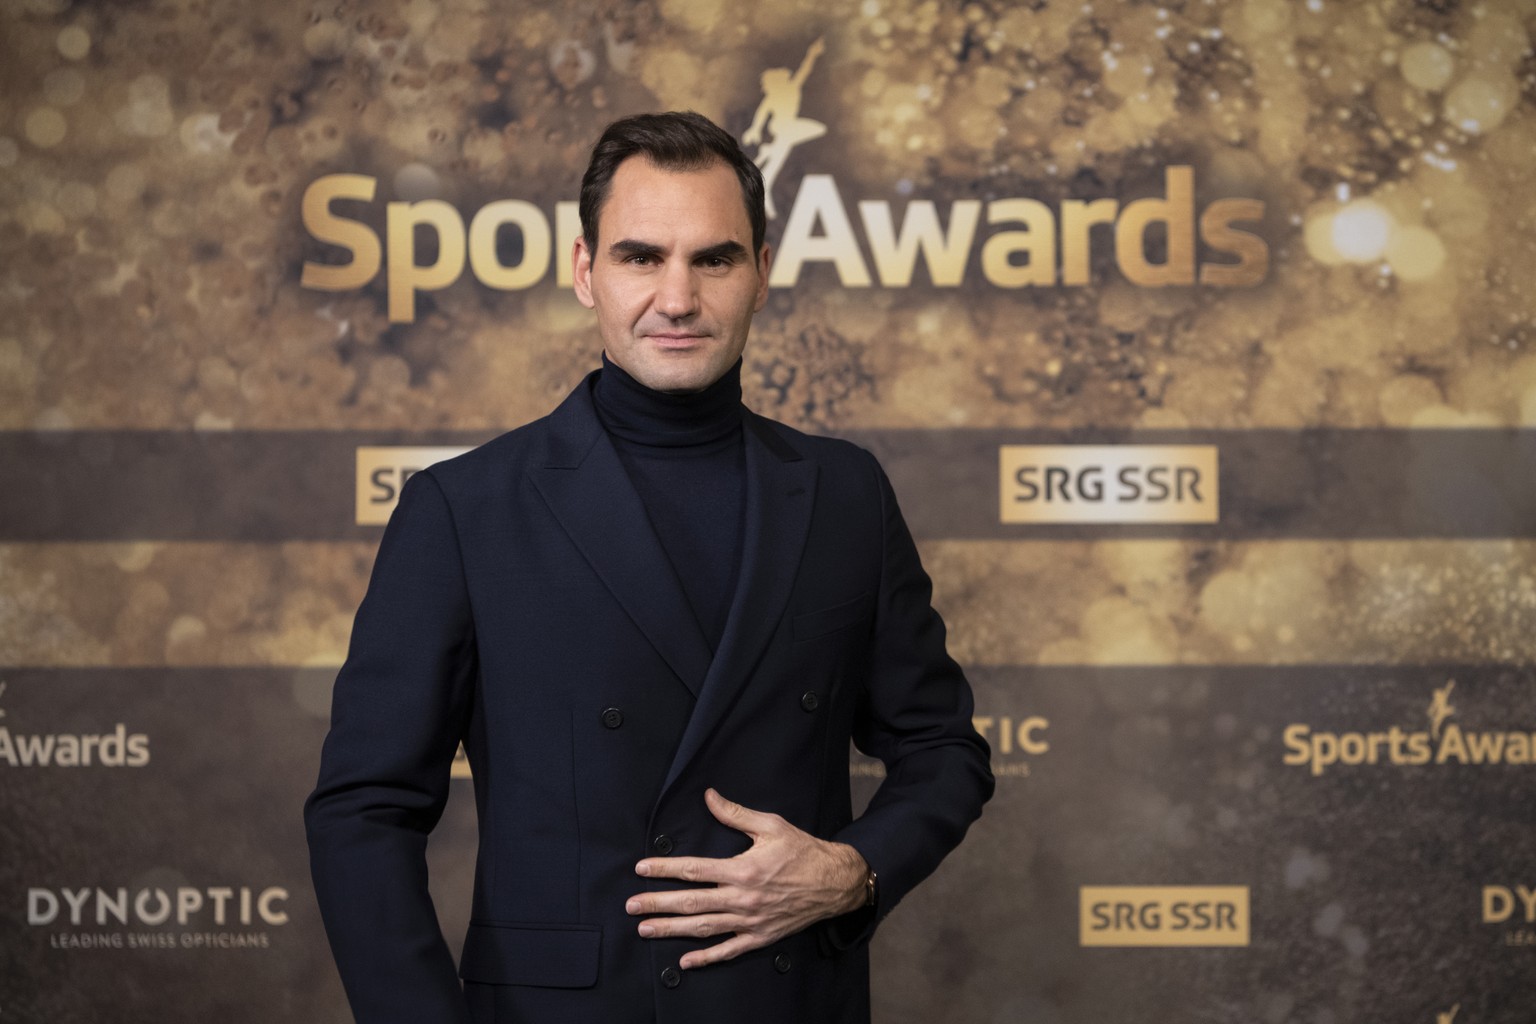 Der nominierte Tennisspieler Roger Federer posiert an der Verleihung der Sports Awards 2020, aufgenommen am Sonntag, 13. Dezember 2020, in Zuerich. (KEYSTONE/Ennio Leanza)